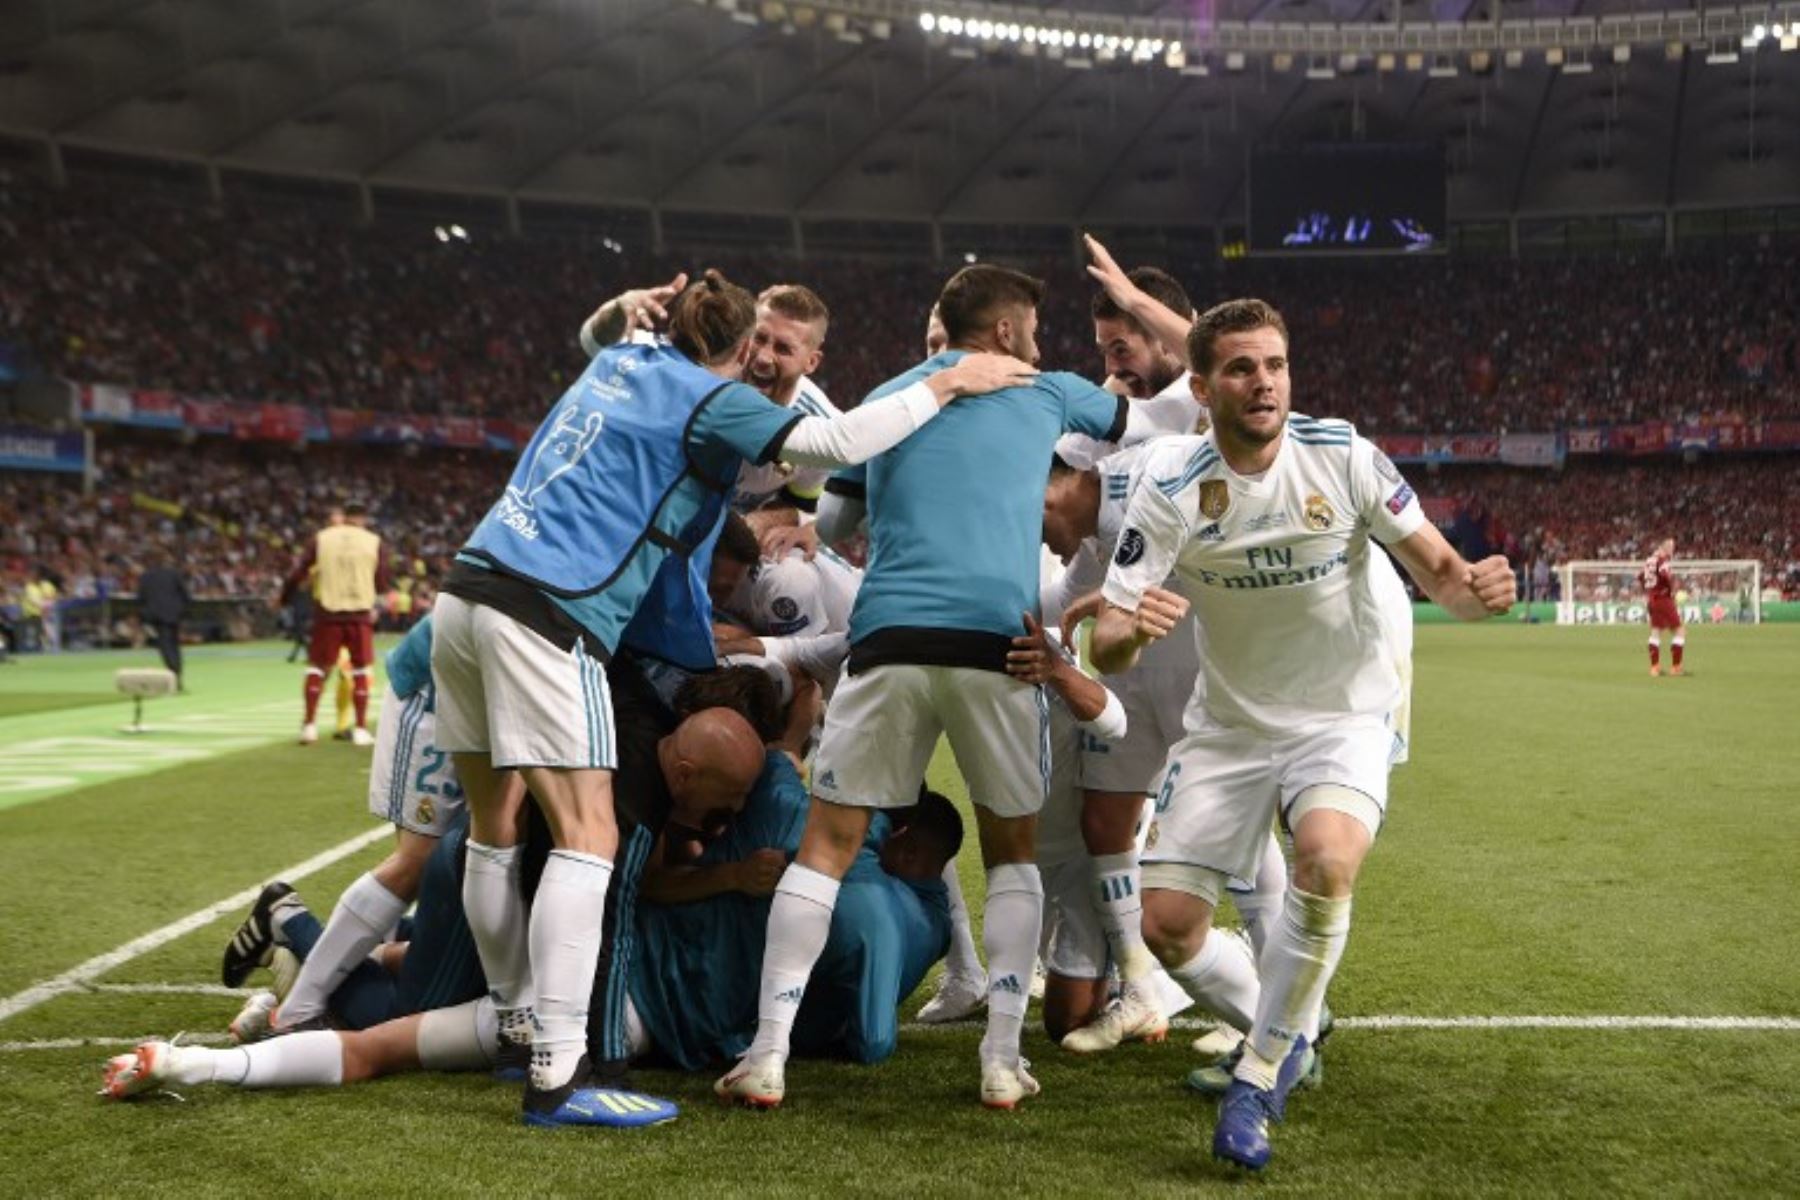 Los jugadores del Real Madrid celebran después de que el delantero francés del Real Madrid Karim Benzema anotó un gol durante el partido de fútbol final de la UEFA Champions League entre el Liverpool y el Real Madrid.Foto:AFP